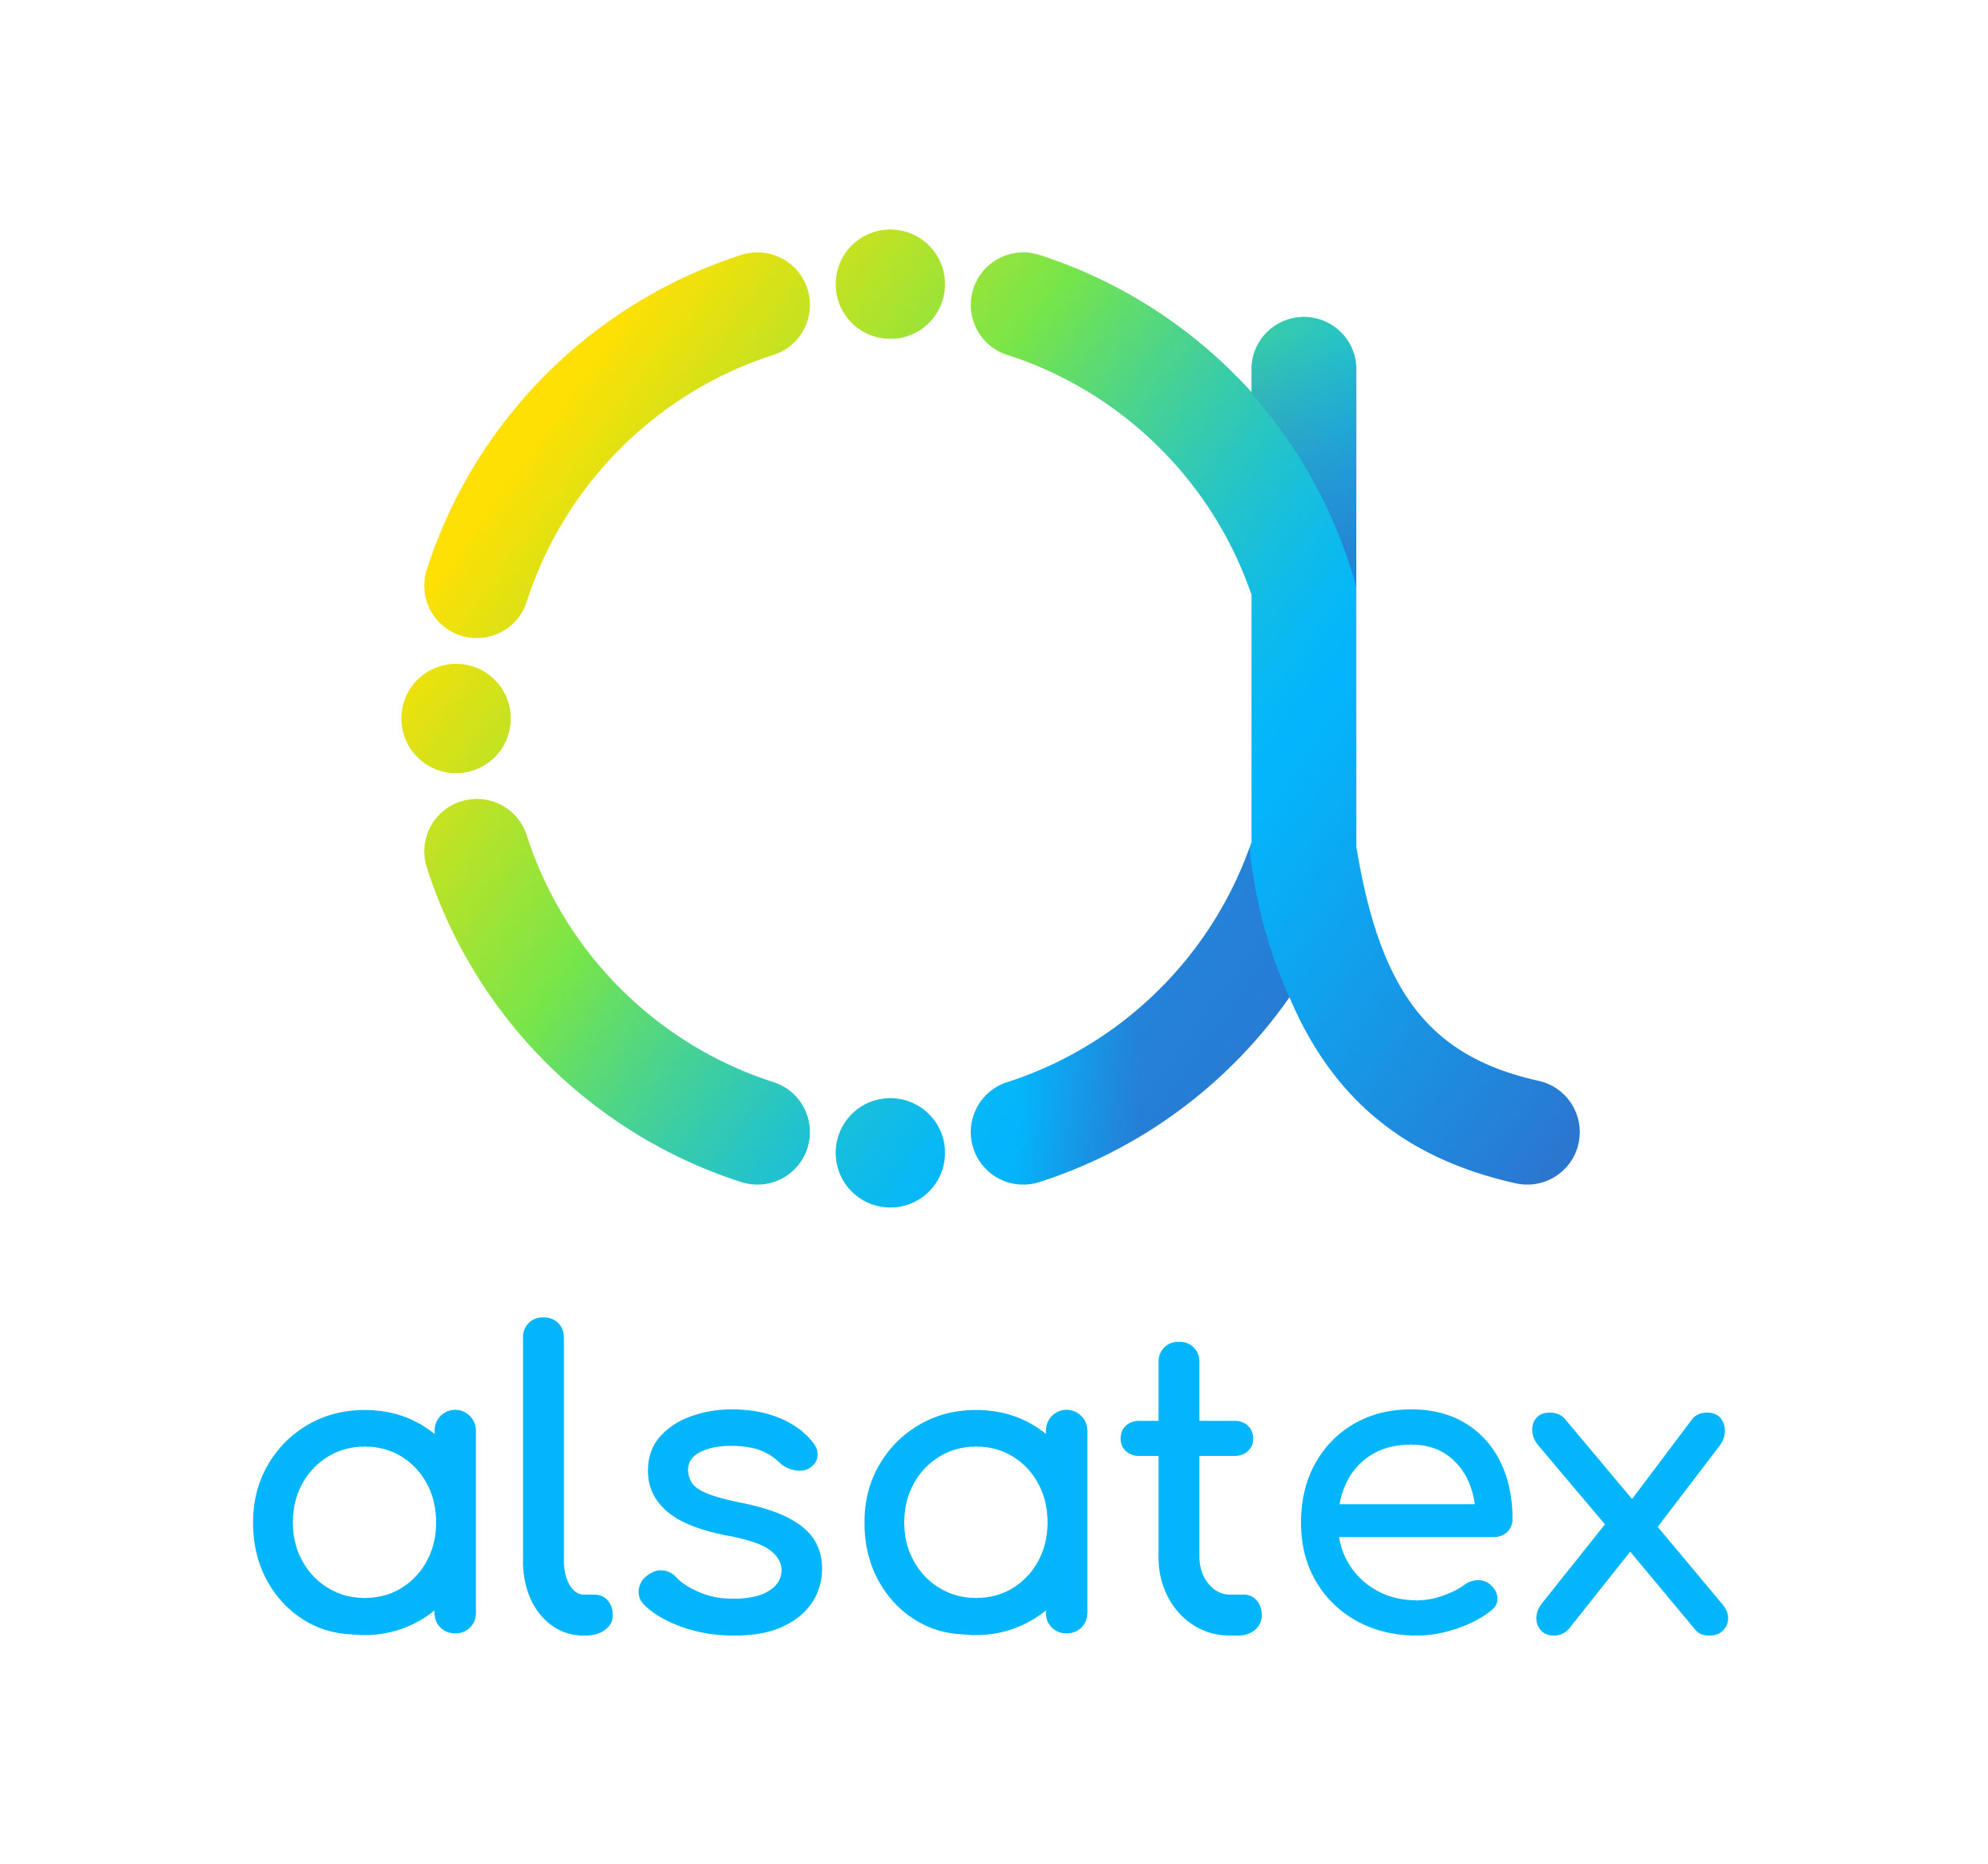 ALSATEX 2021